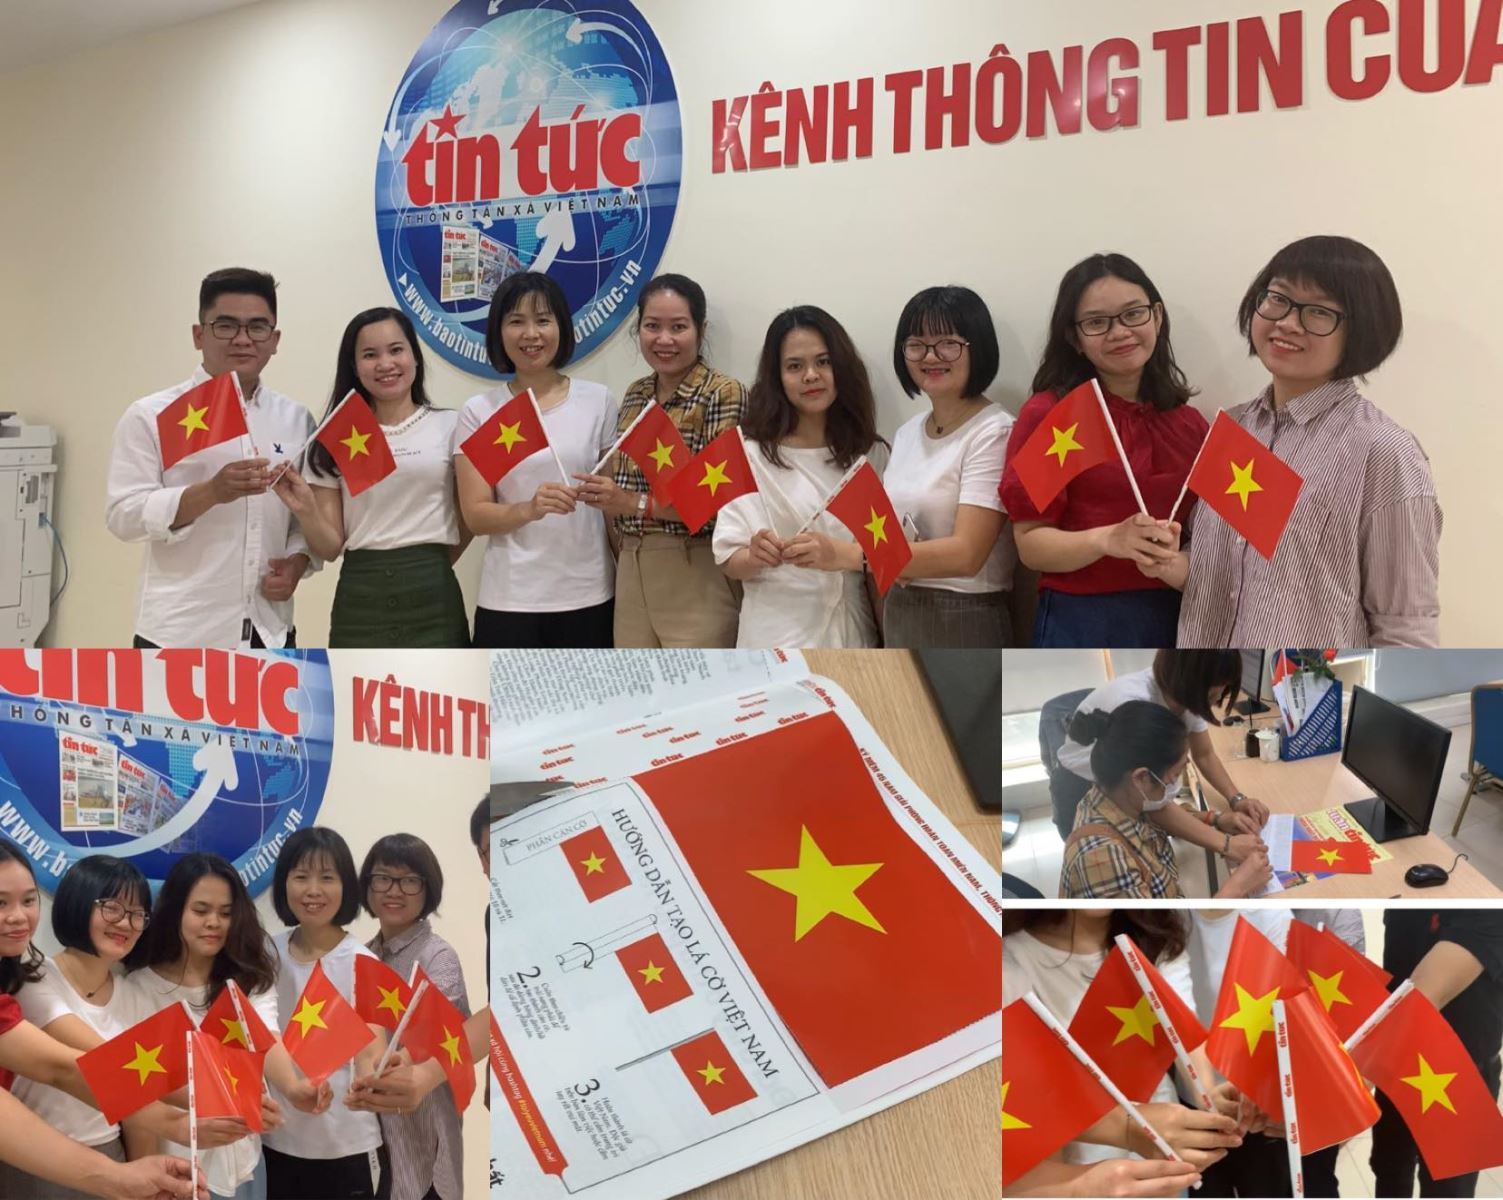 Lá cờ Việt Nam là biểu tượng văn hóa mang ý nghĩa rất quan trọng đối với người dân Việt Nam. Năm 2024, chúng ta tự hào được trông thấy lá cờ Việt Nam tung bay trên khắp các nơi trên thế giới, giới thiệu cho thế giới về sự kết nối và đoàn kết của đất nước Việt Nam. Hãy ngắm nhìn hình ảnh lá cờ Việt Nam và cùng nhau đón chào tương lai sáng tươi!